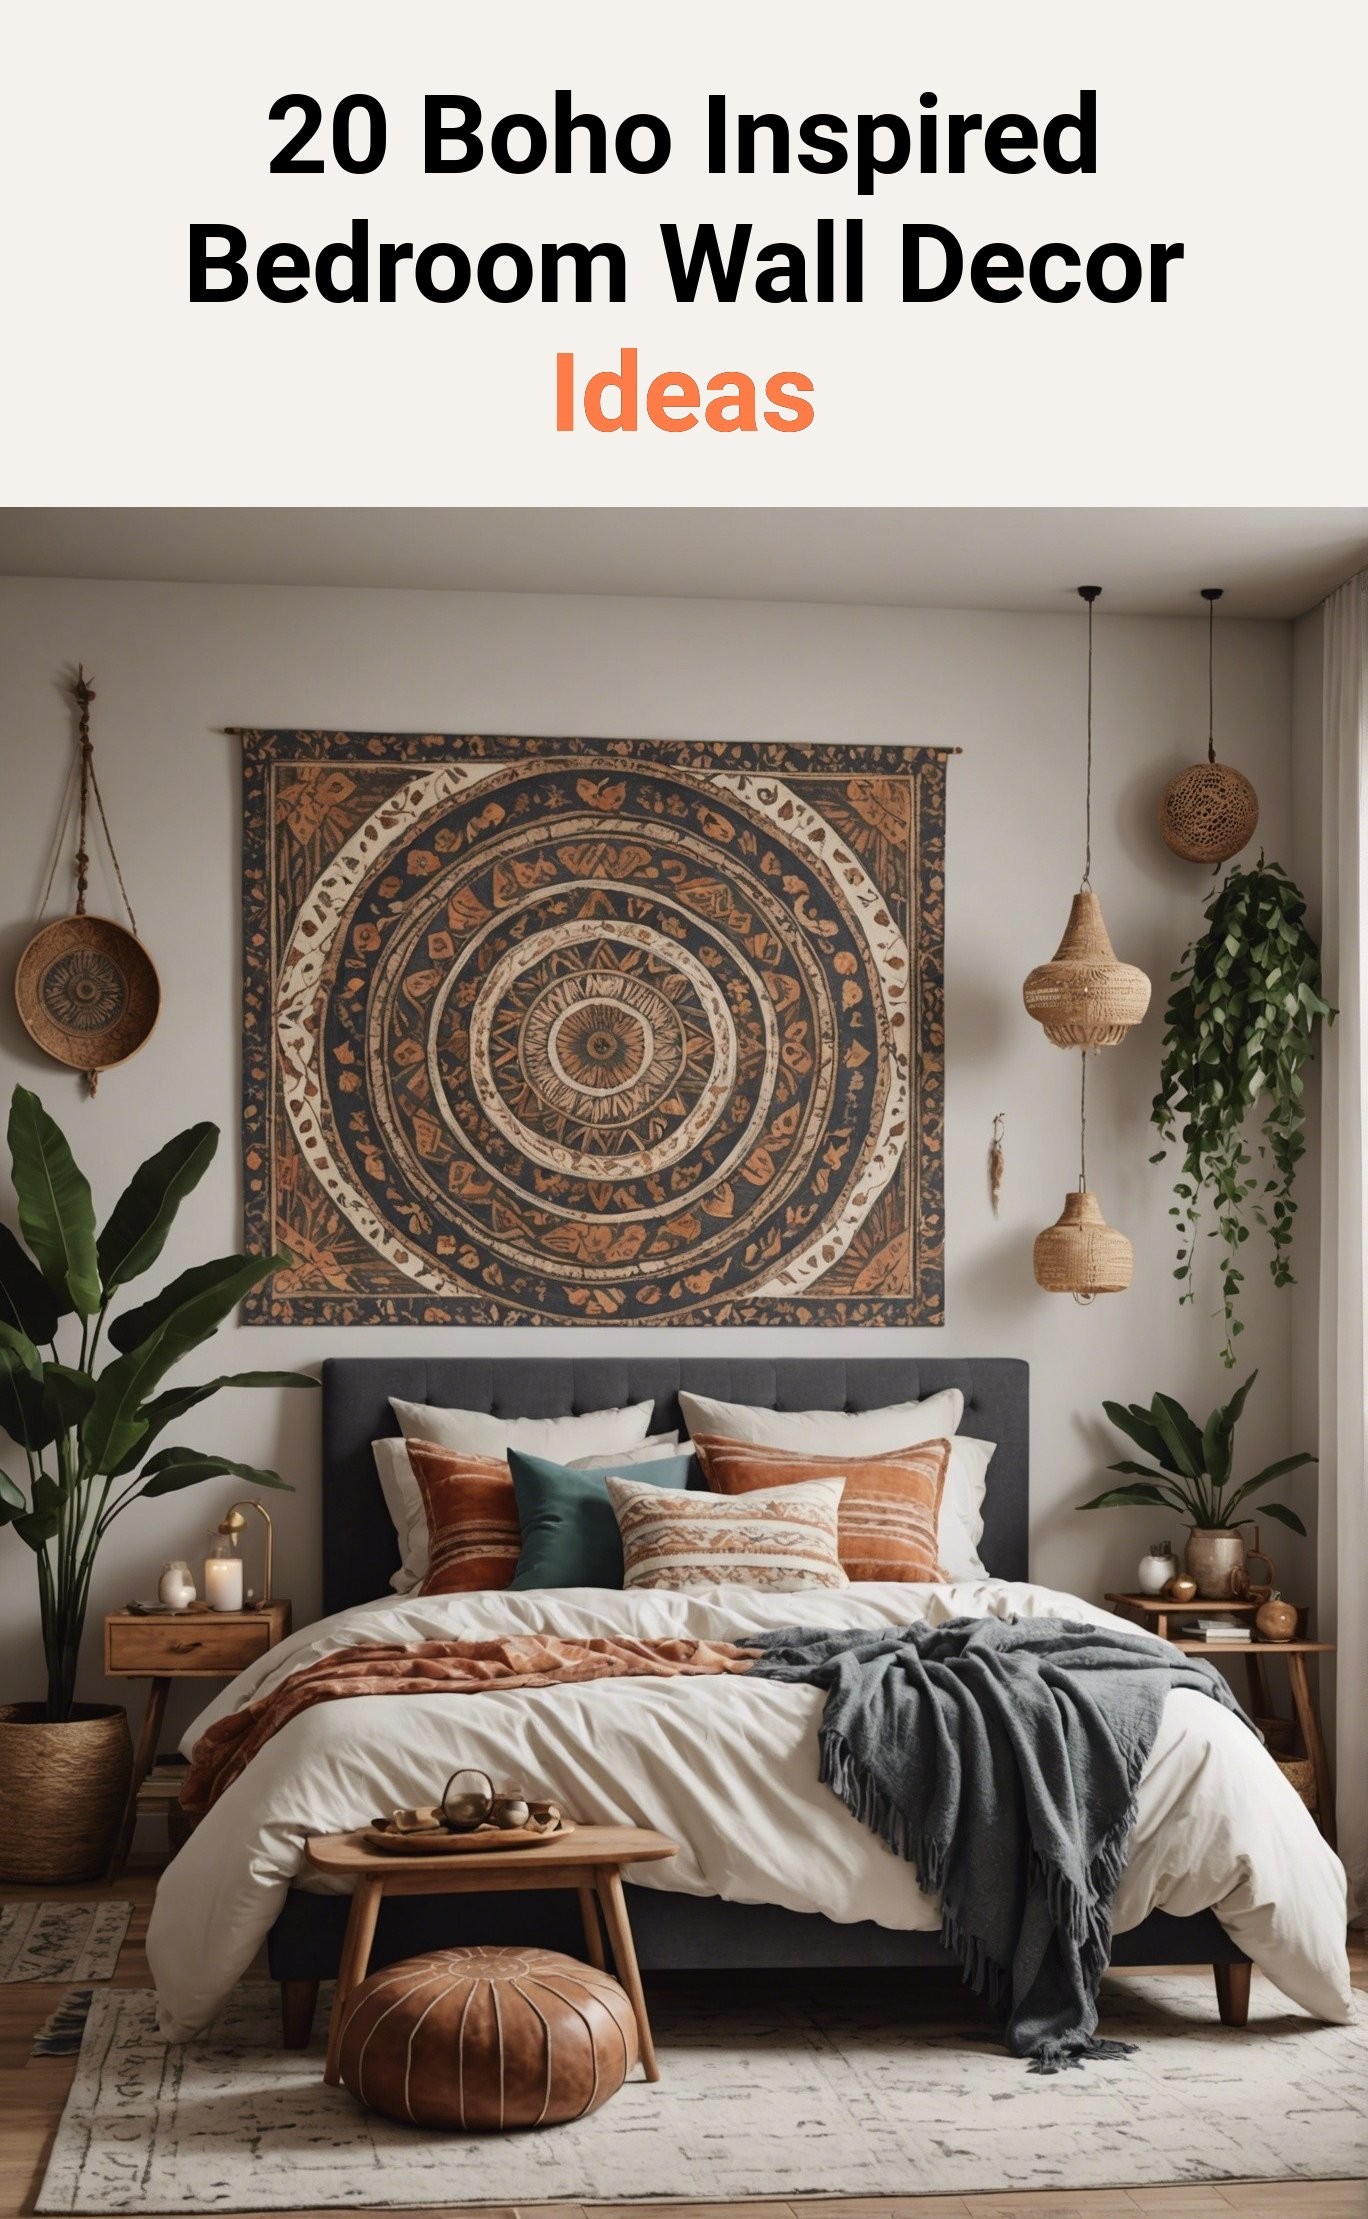 20 Boho Inspired Bedroom Wall Decor Ideas